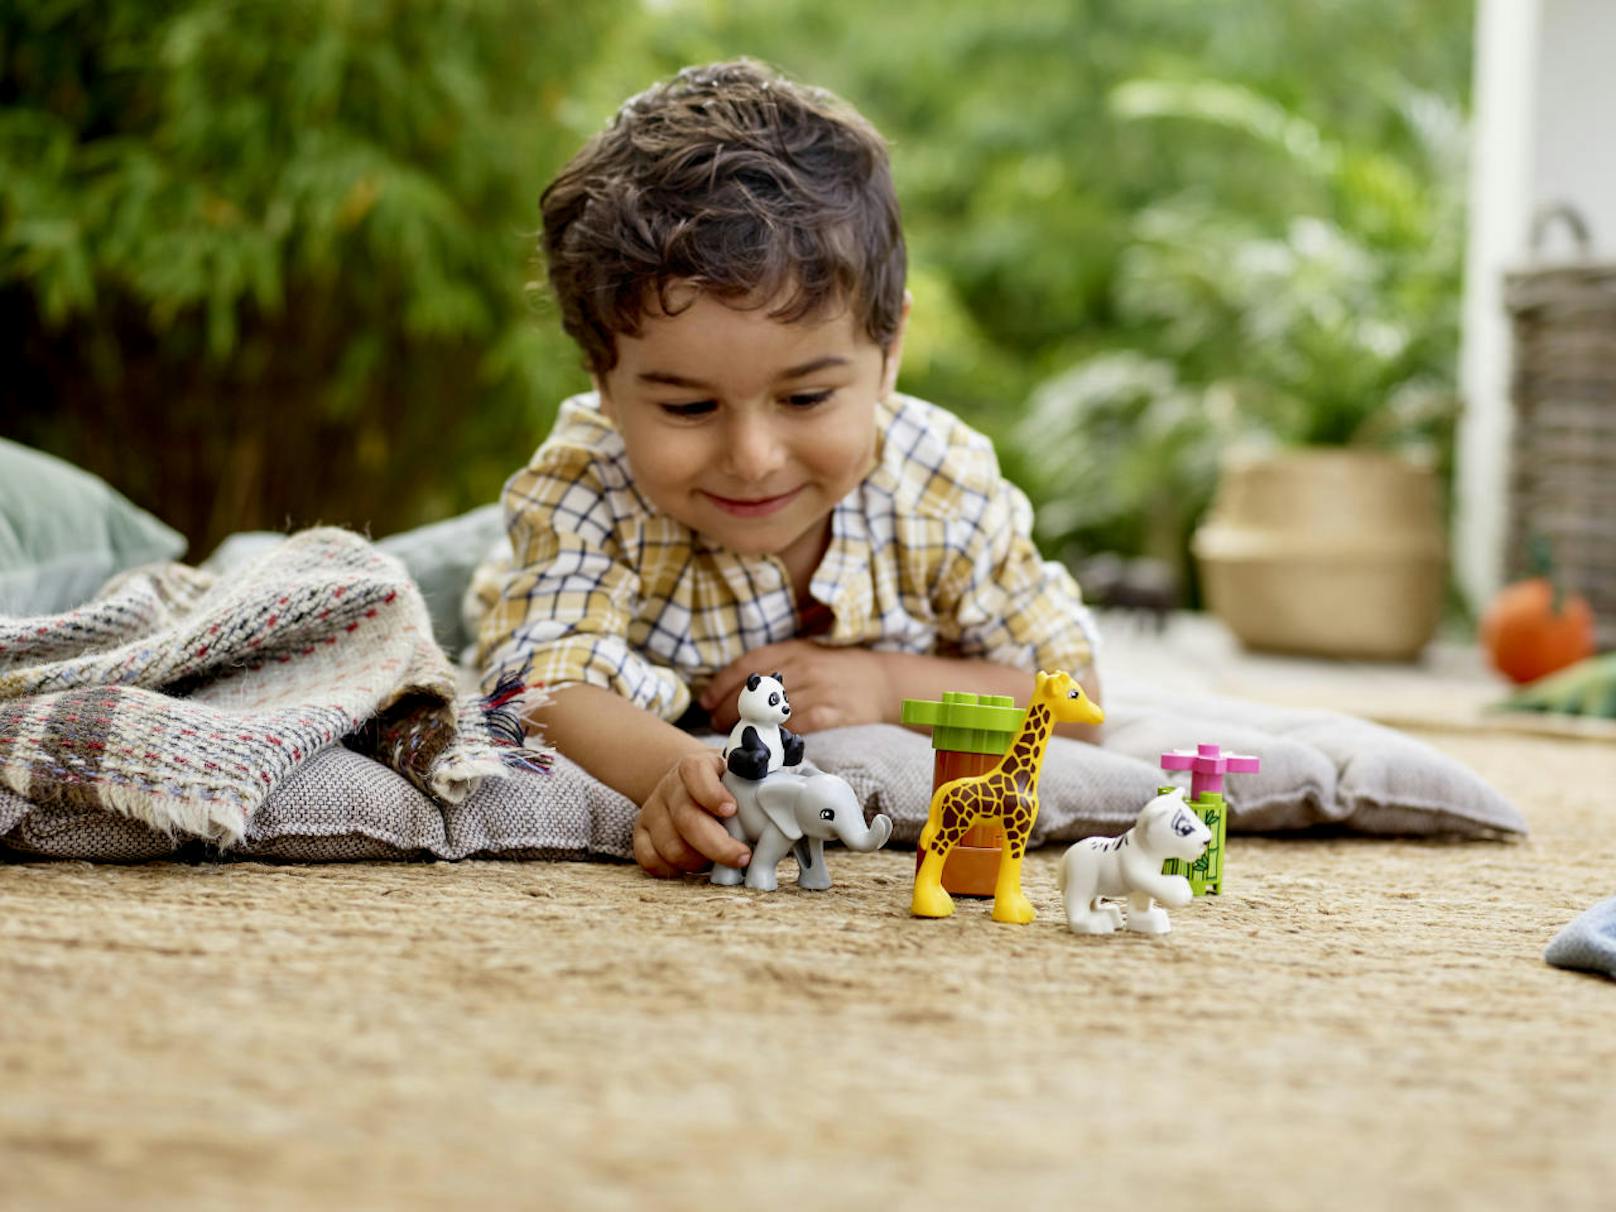 Lego Duplo bietet den Kleinen nicht bunte Bausteine, sondern regt auch mit immer neuen Themenwelten, wie den "Süßen Tierkindern"  um 9,99 Euro, deren Phantasie an.